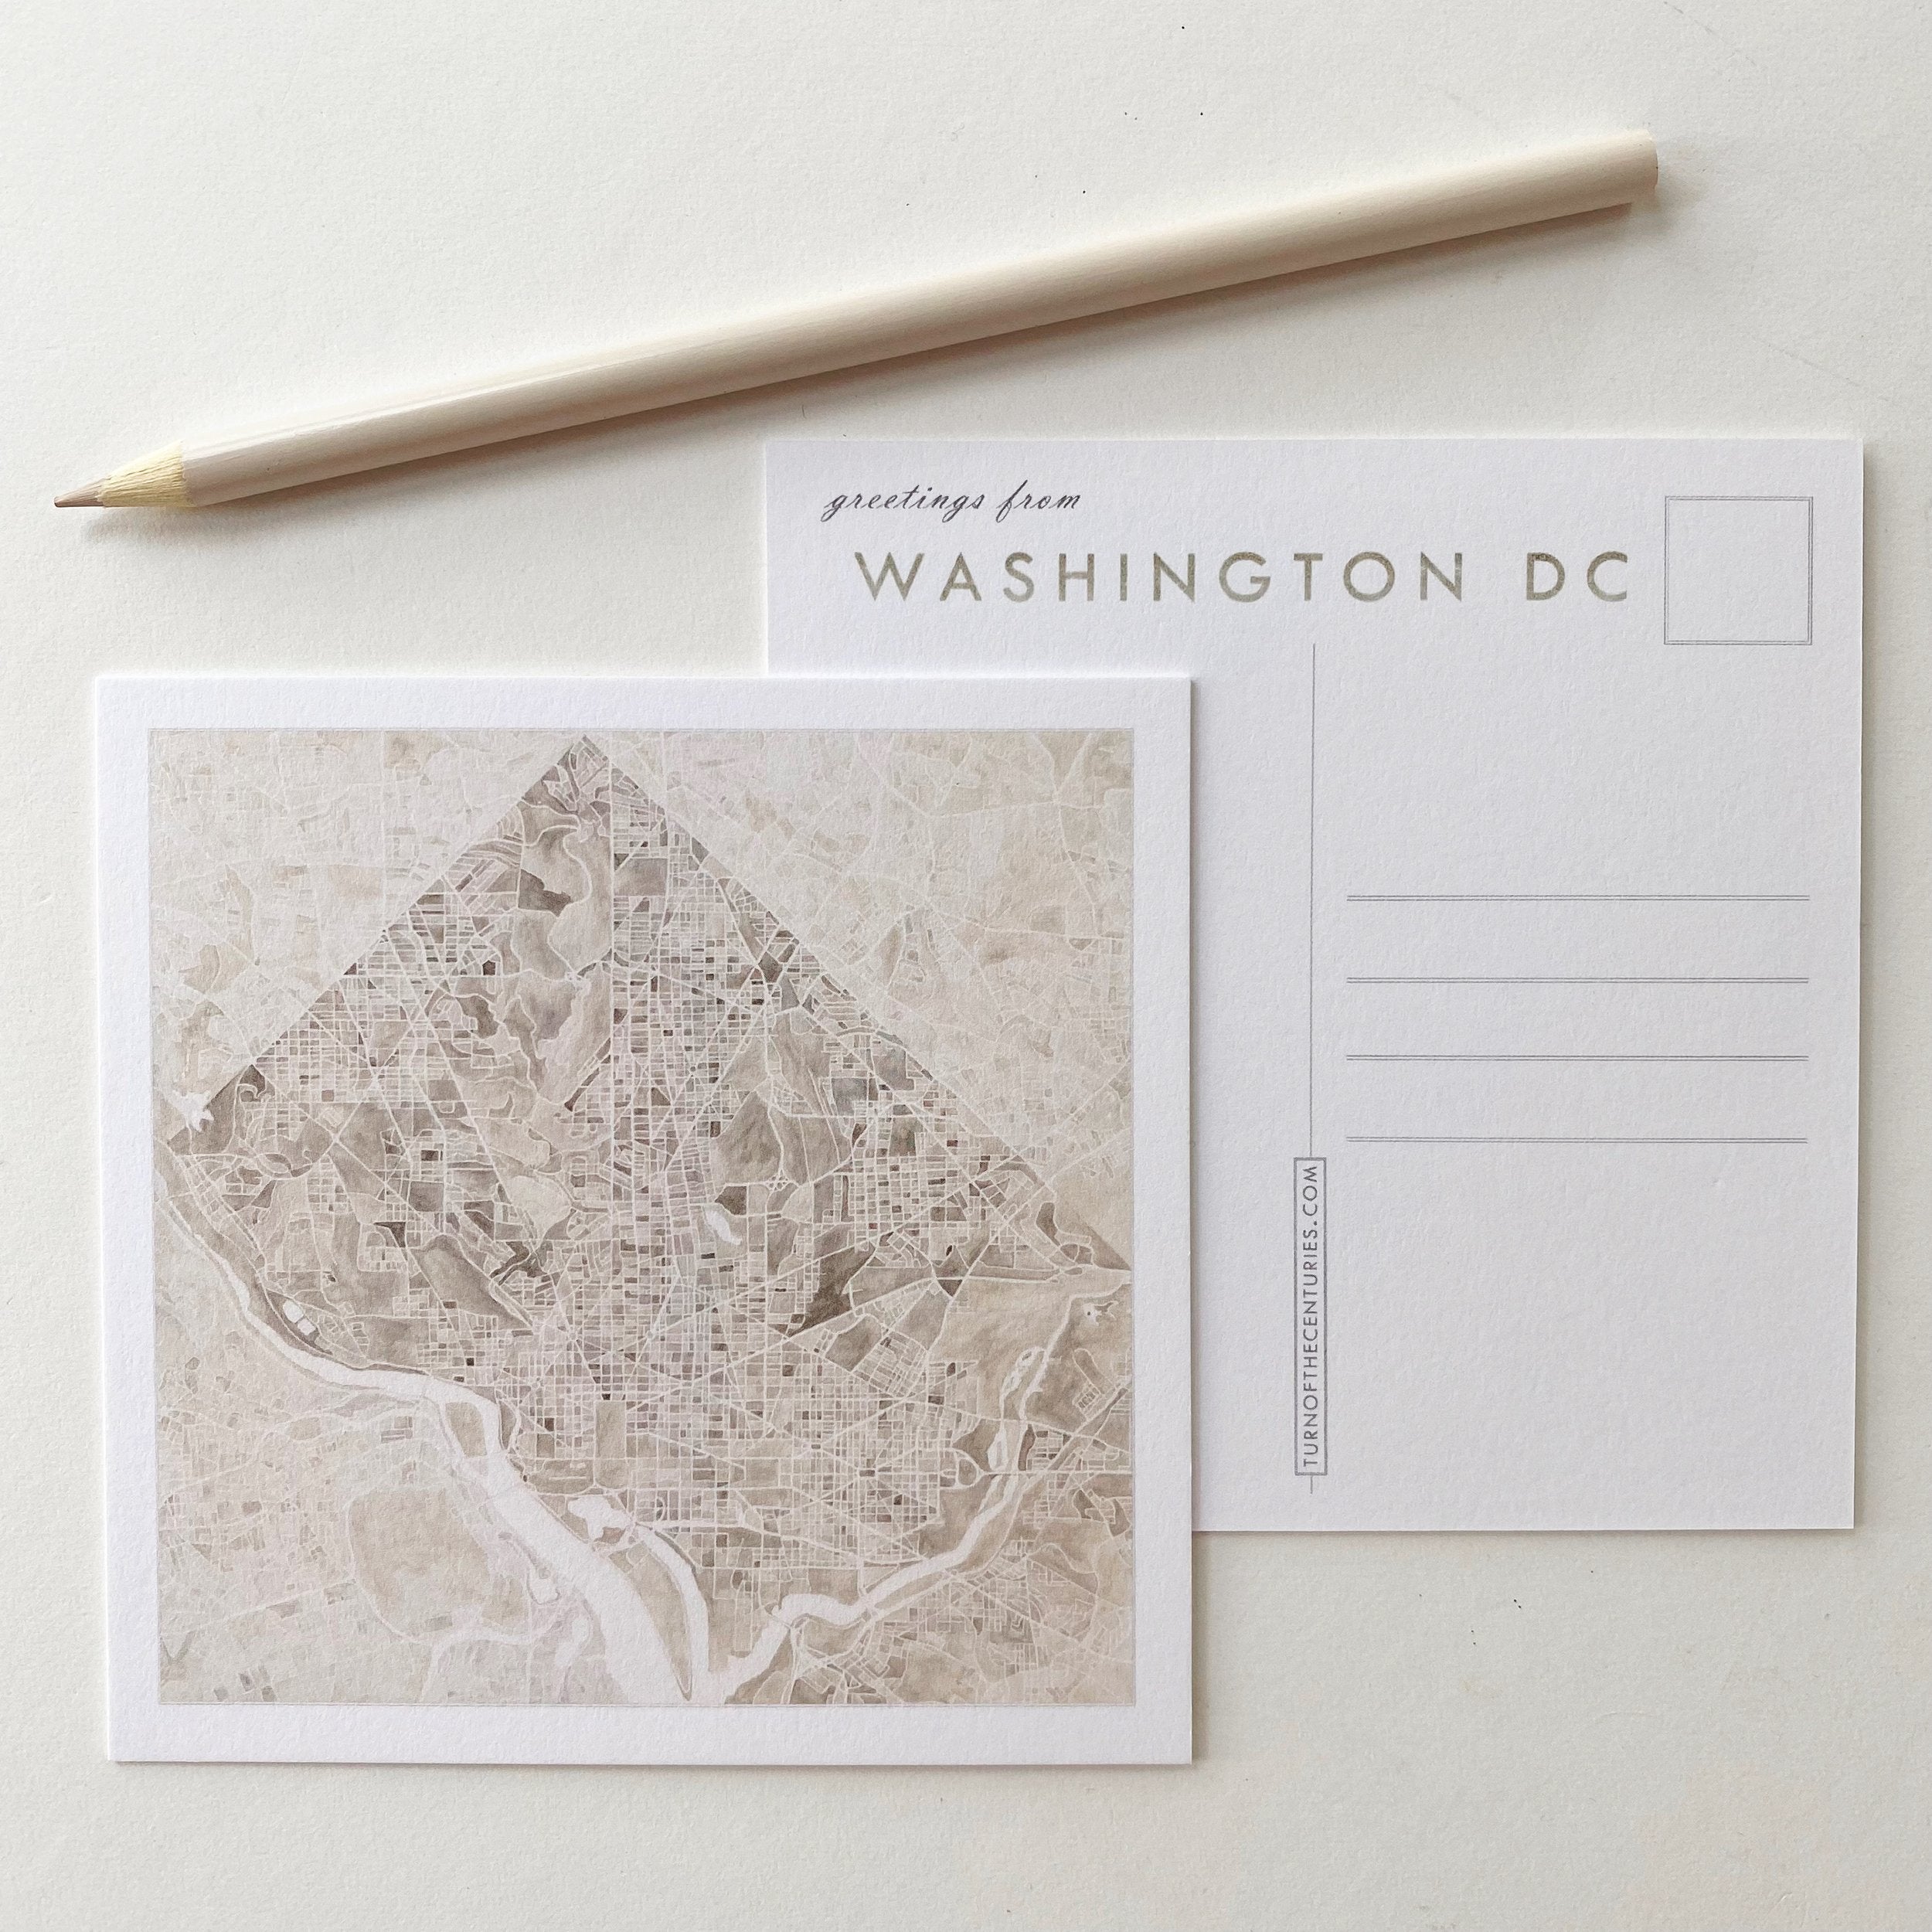 WASHINGTON DC Map Postcard